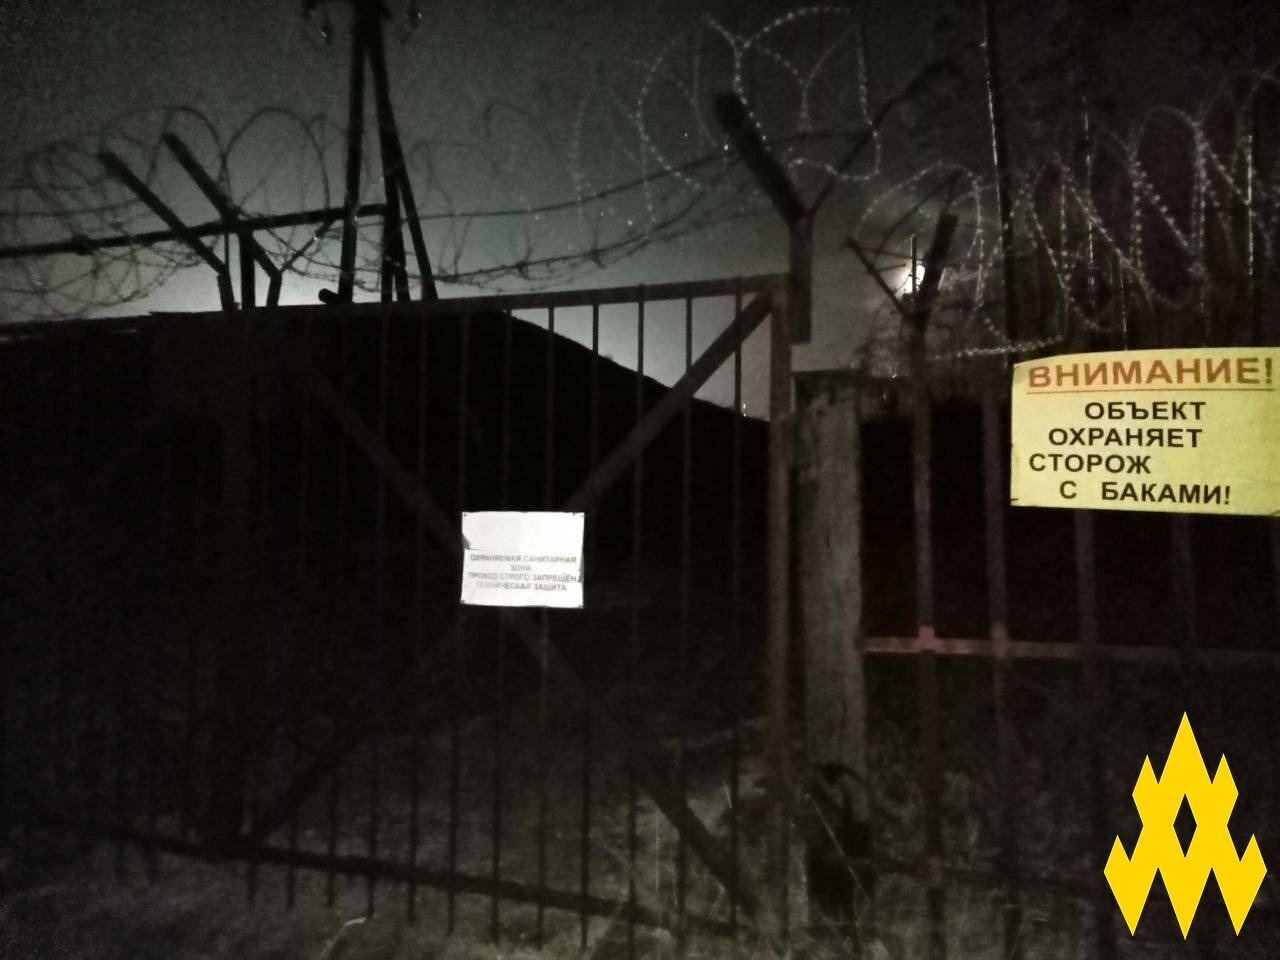 Агенты "Атеш" провели разведку на базе оккупантов в Тольятти, где хранятся боеприпасы. Фото